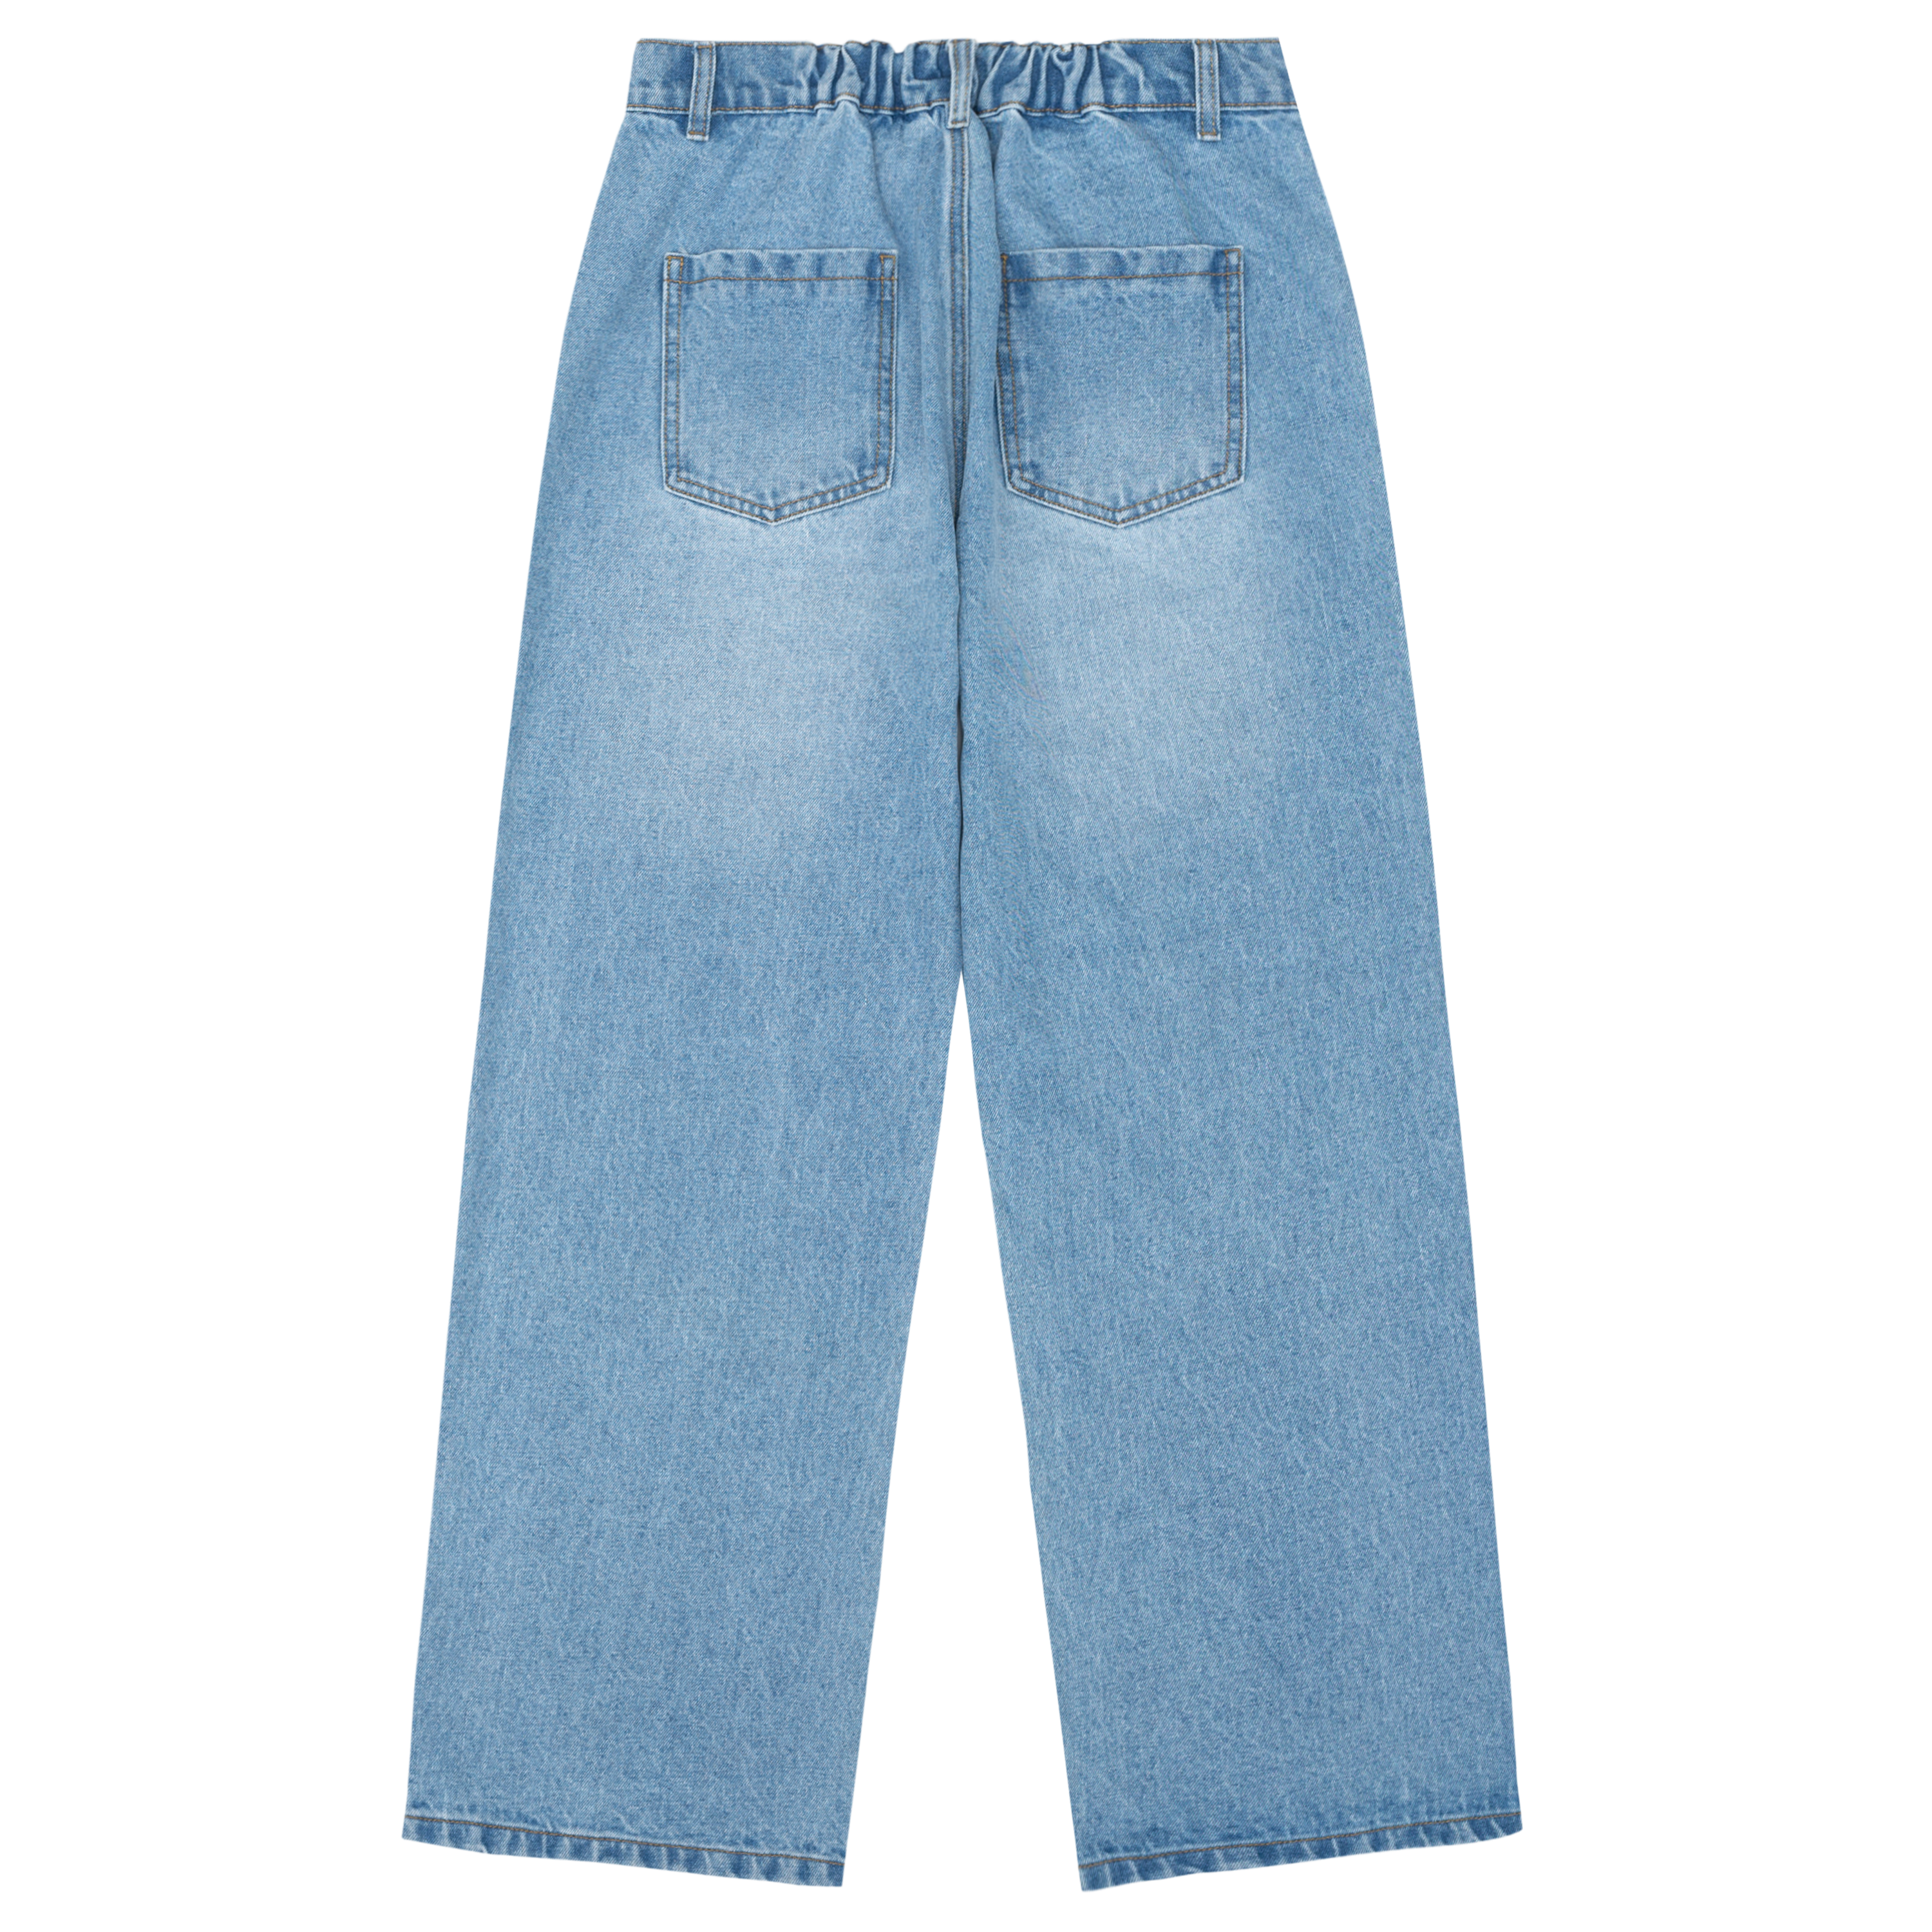 TAKA Original [Eternet 002] butterfly jeans